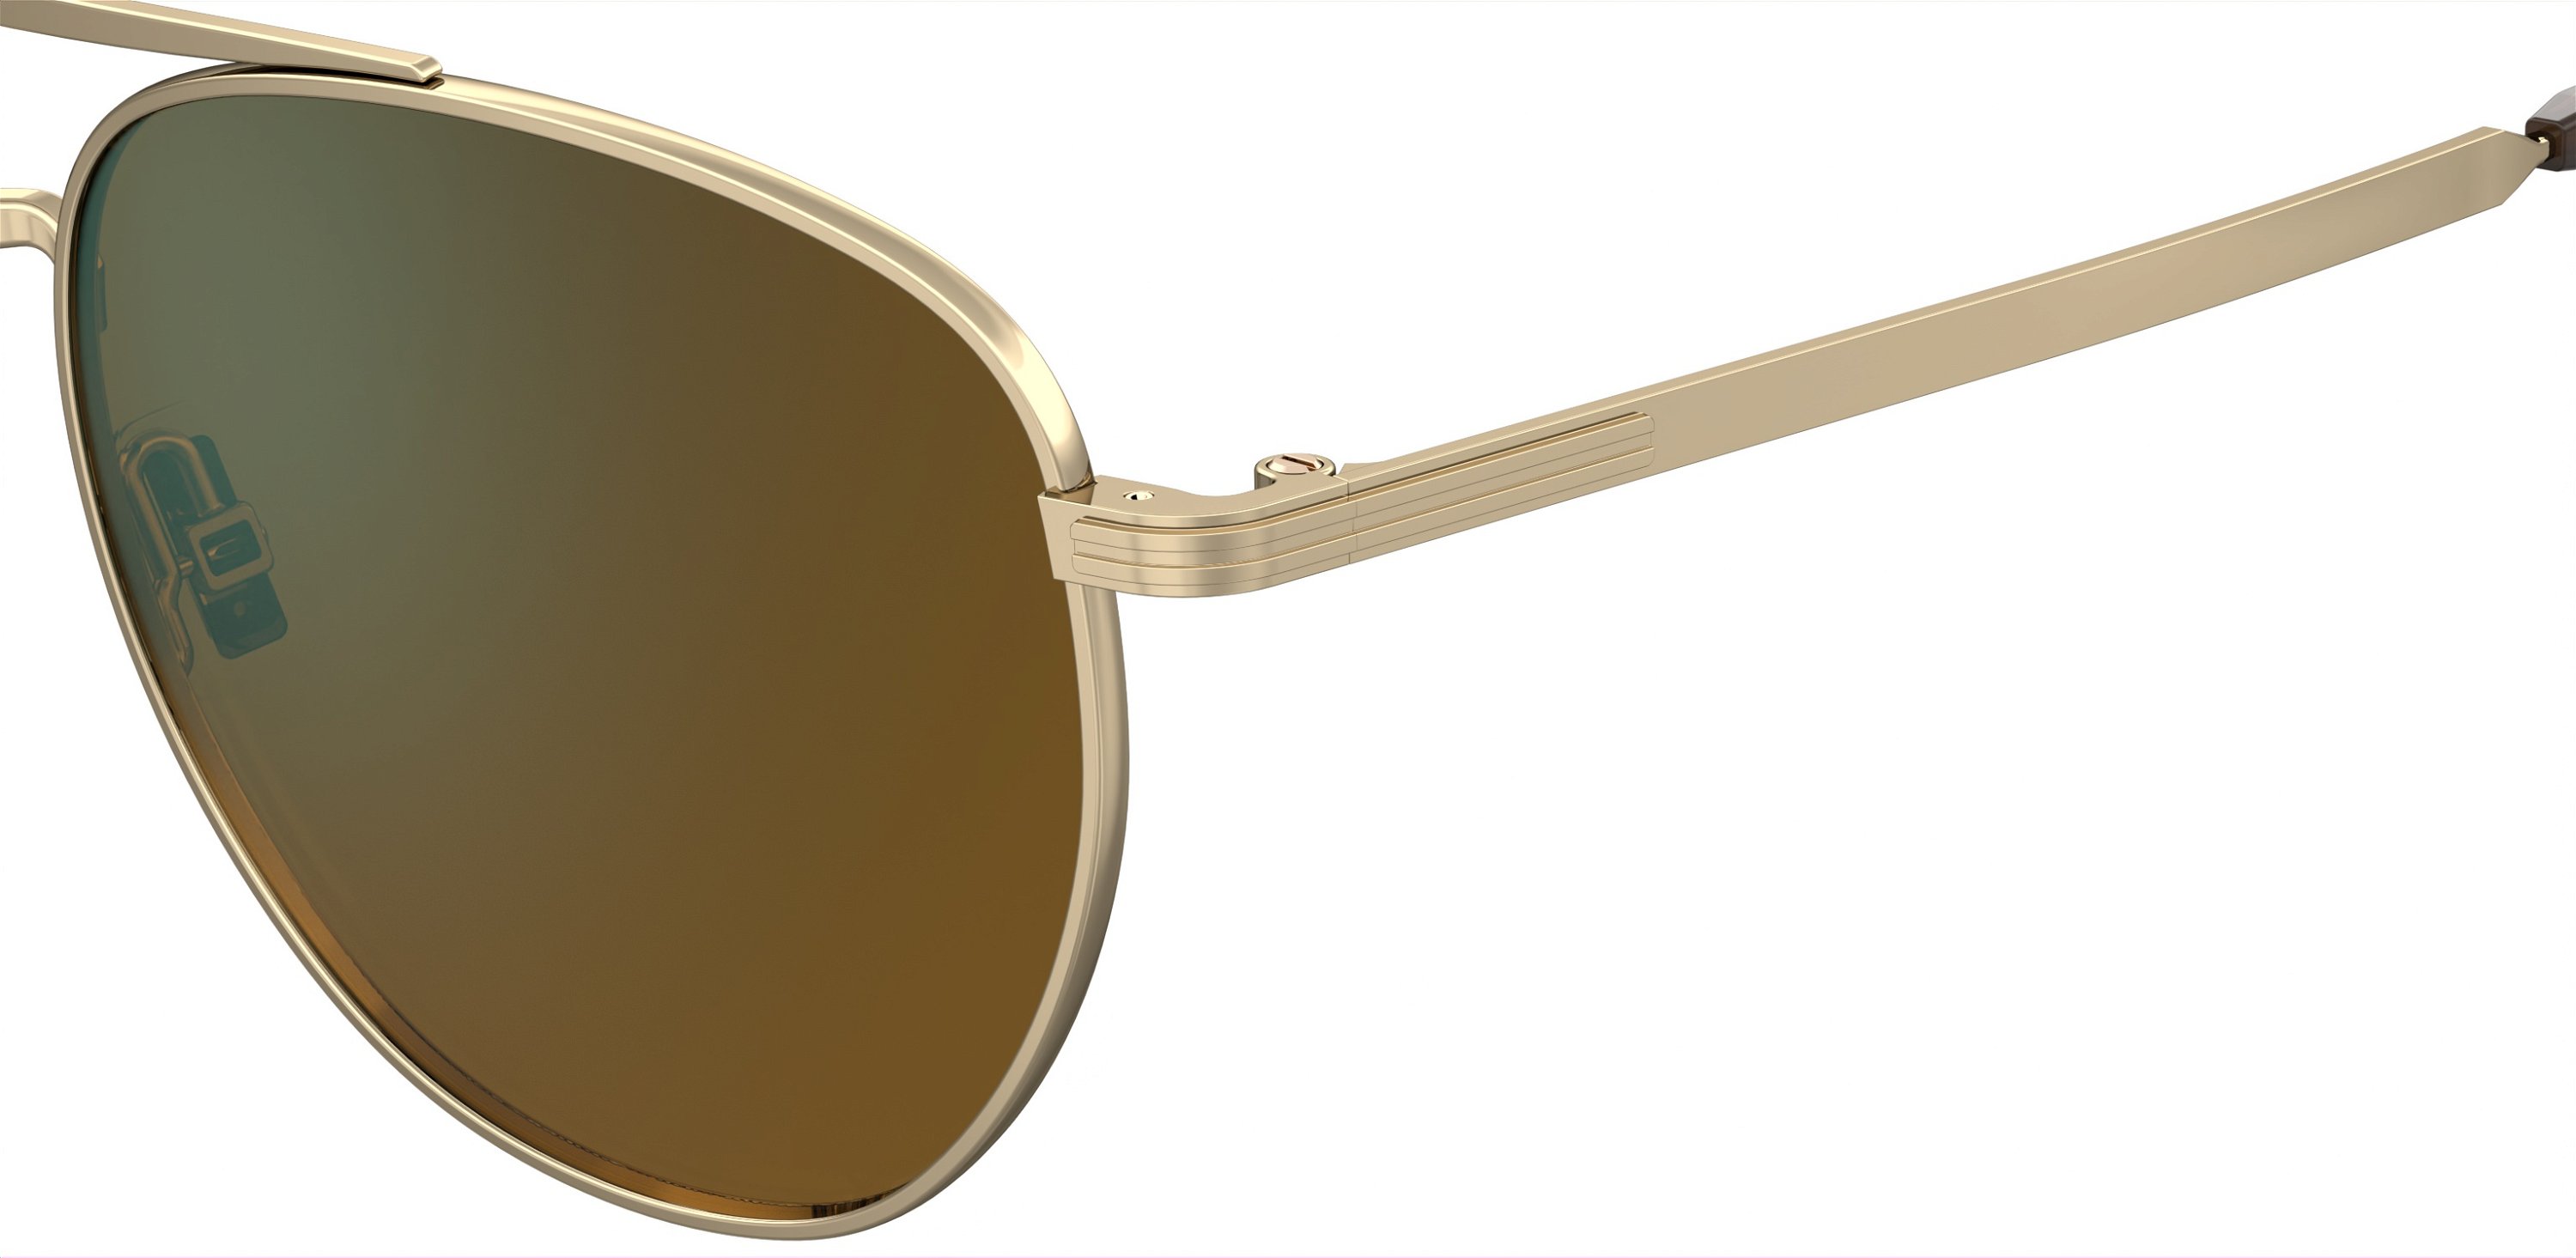 Das Bild zeigt die Sonnenbrille BOSS1631S J5G von der Marke BOSS in Gold.